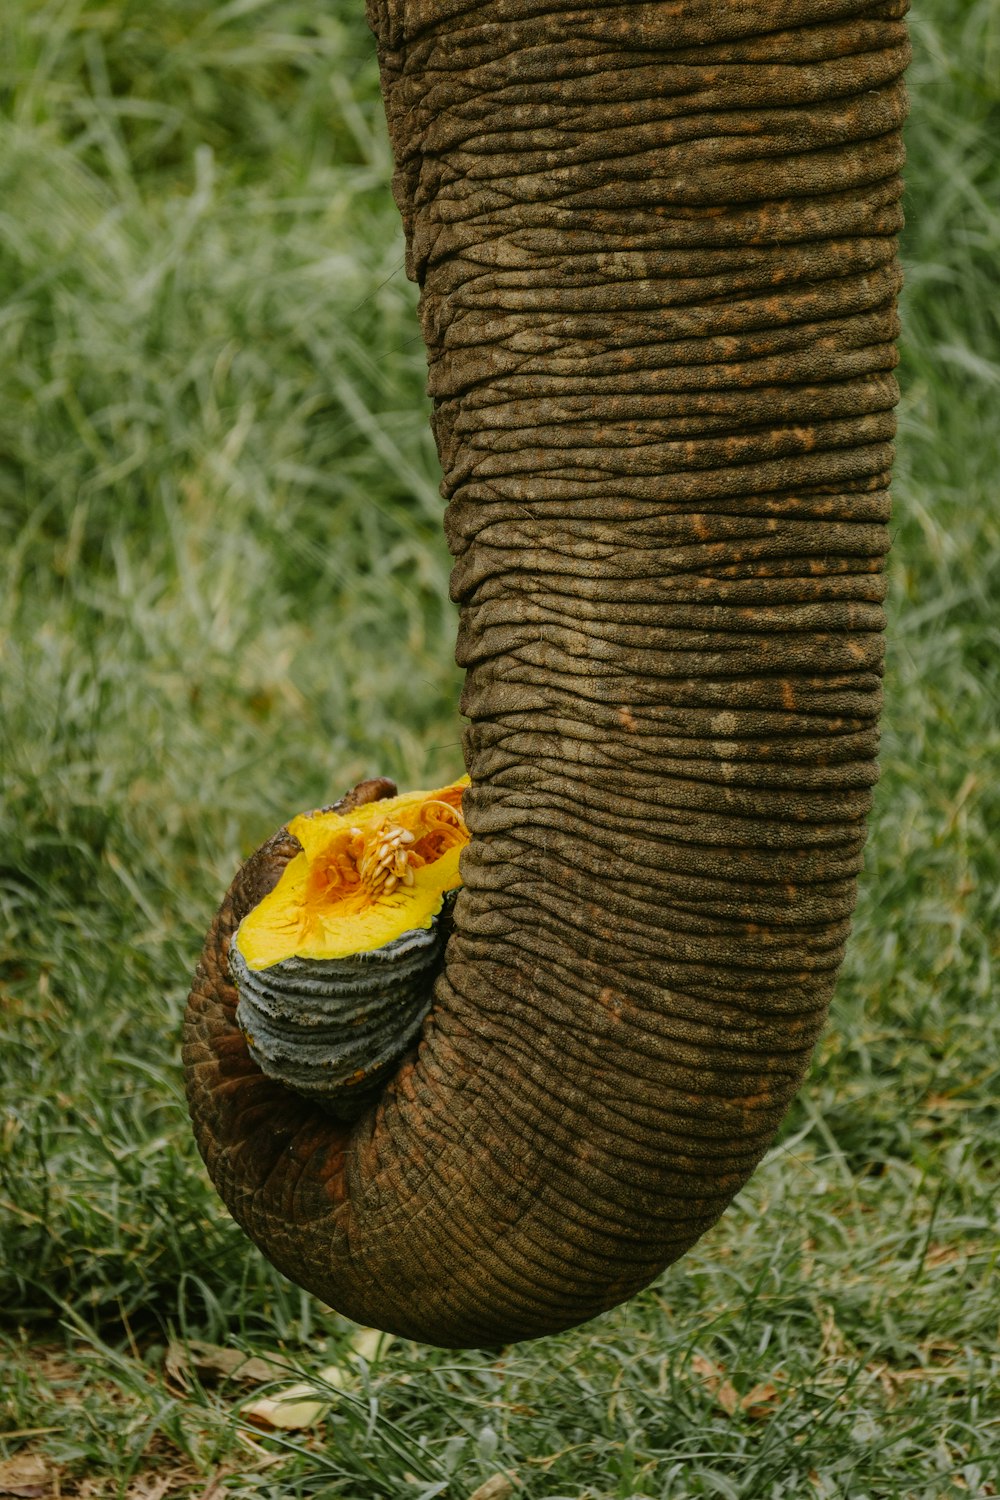 Un primer plano de la trompa de un elefante con una pieza de fruta